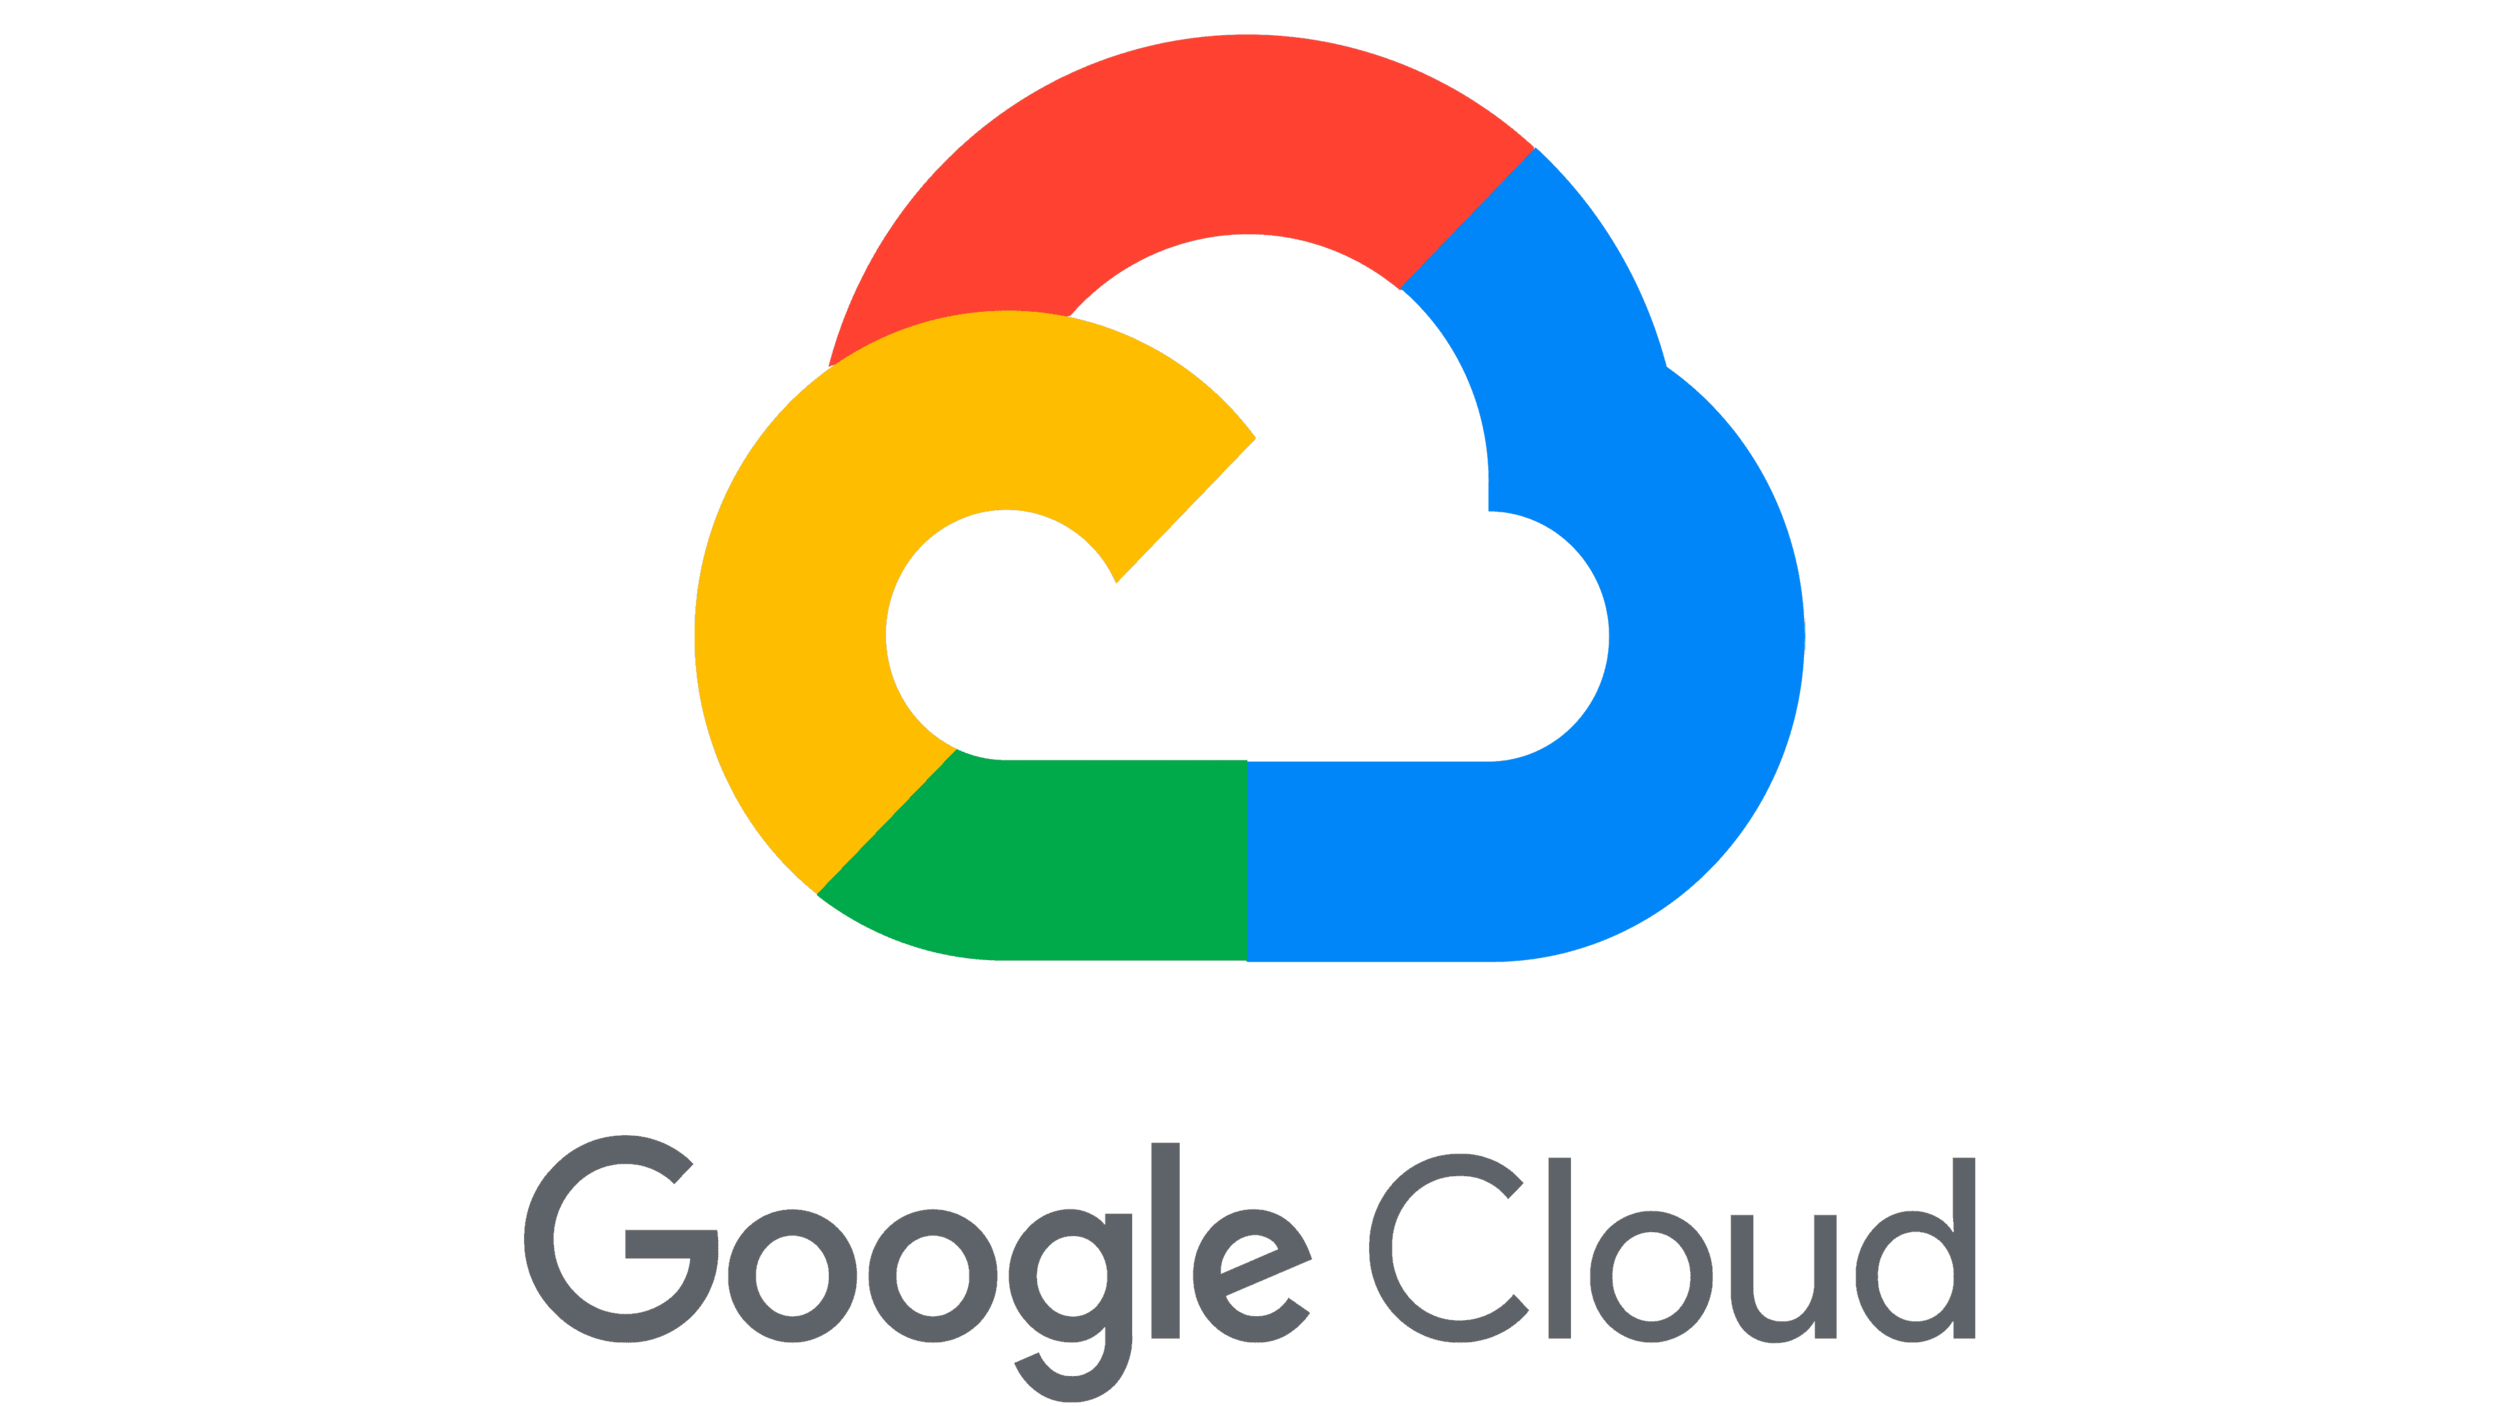 Google-Cloud-Symbol.png